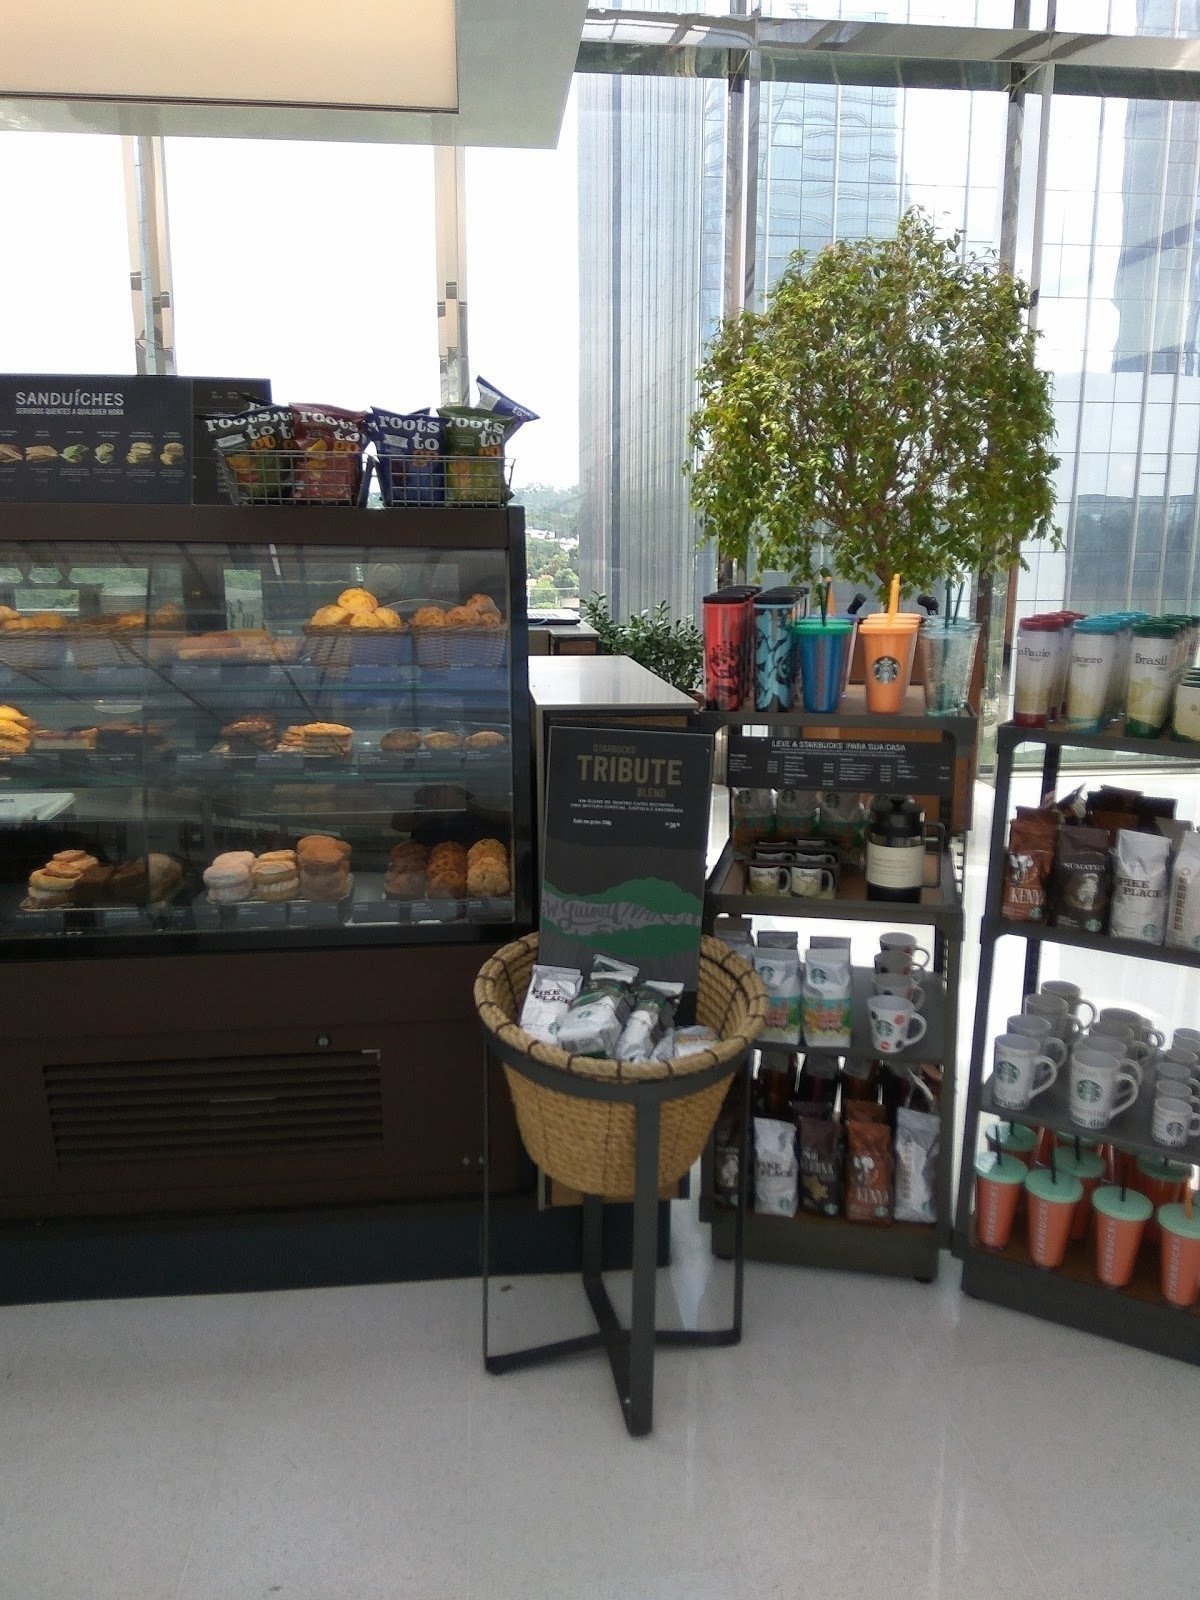 Starbucks - JK Iguatemi: A Work-Friendly Place in São Paulo